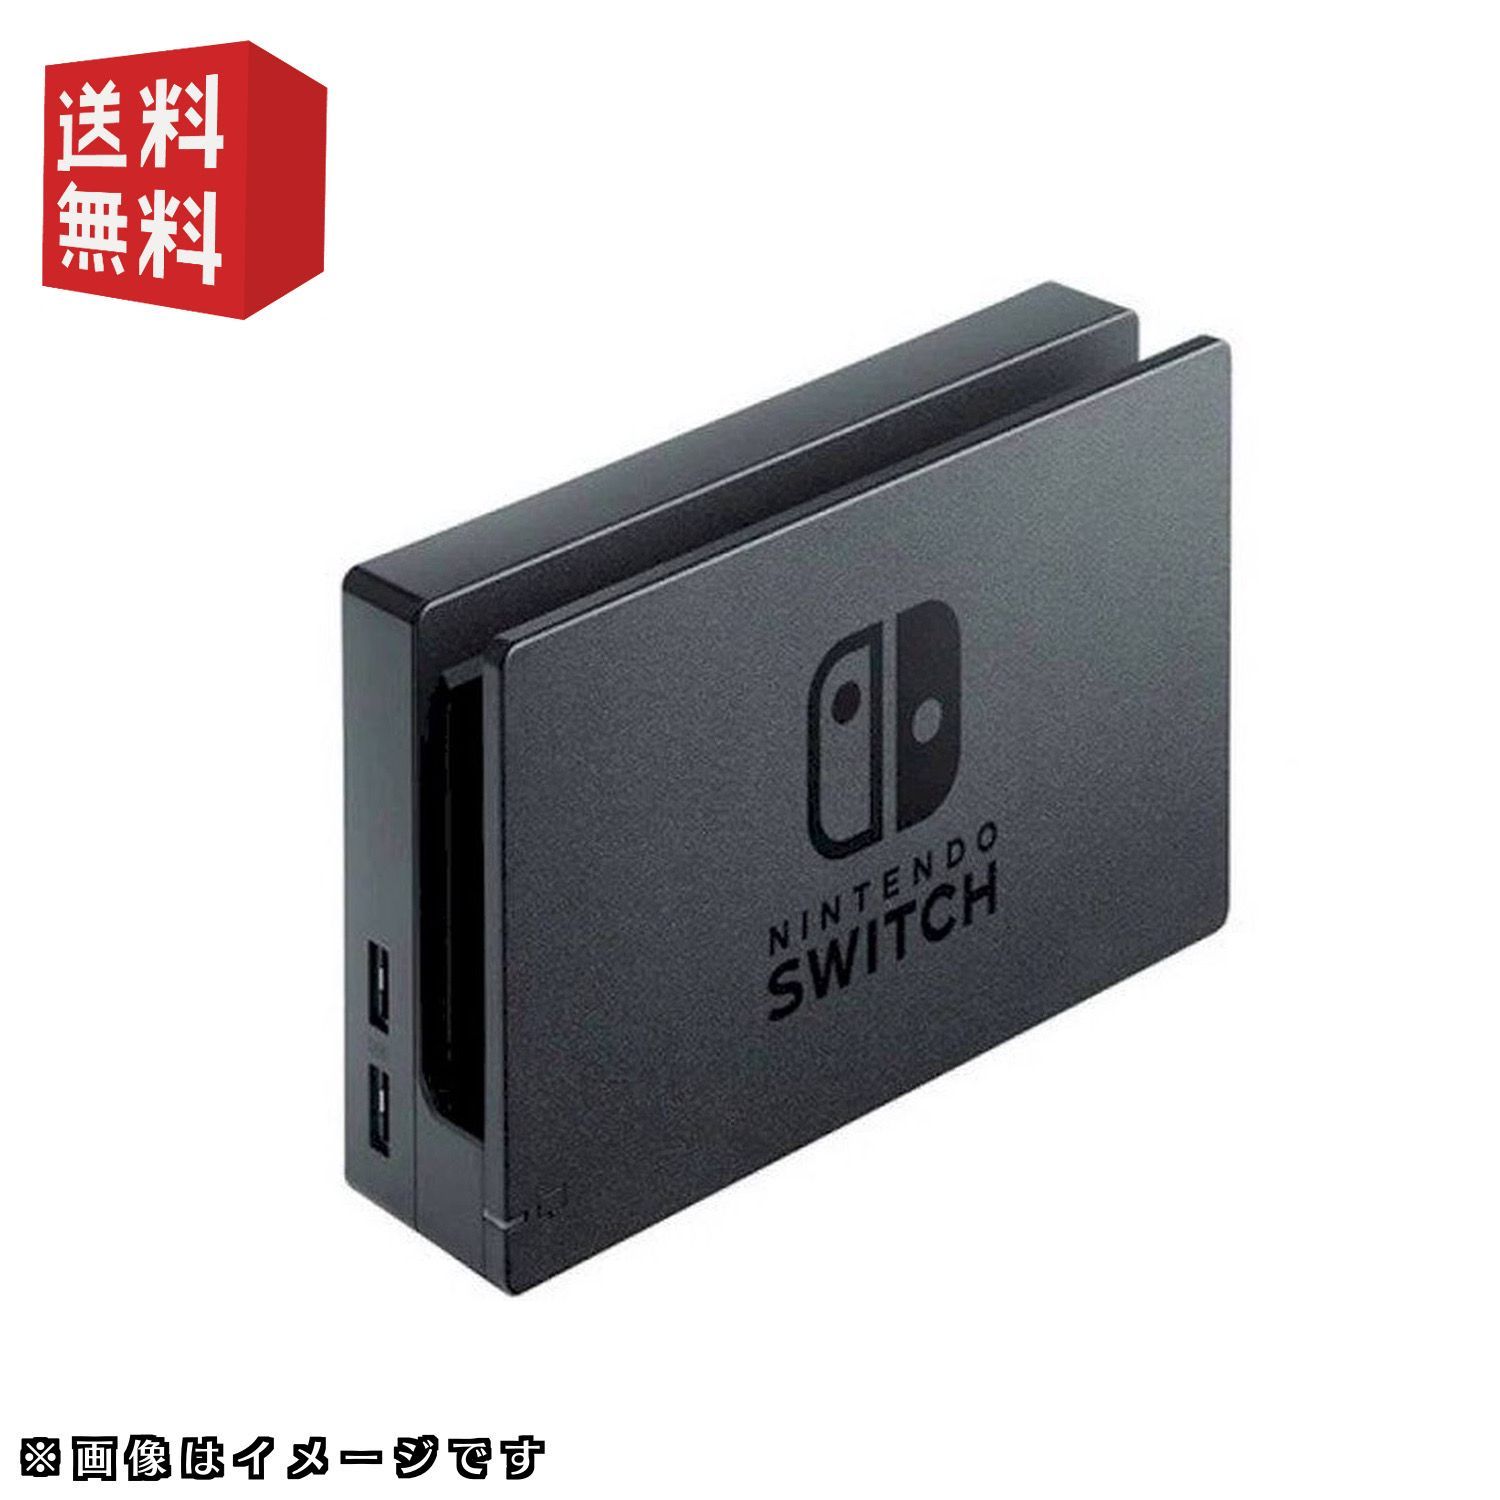 美品　Nintendo Switch 本体+ドック+HDMIケーブルSwitch